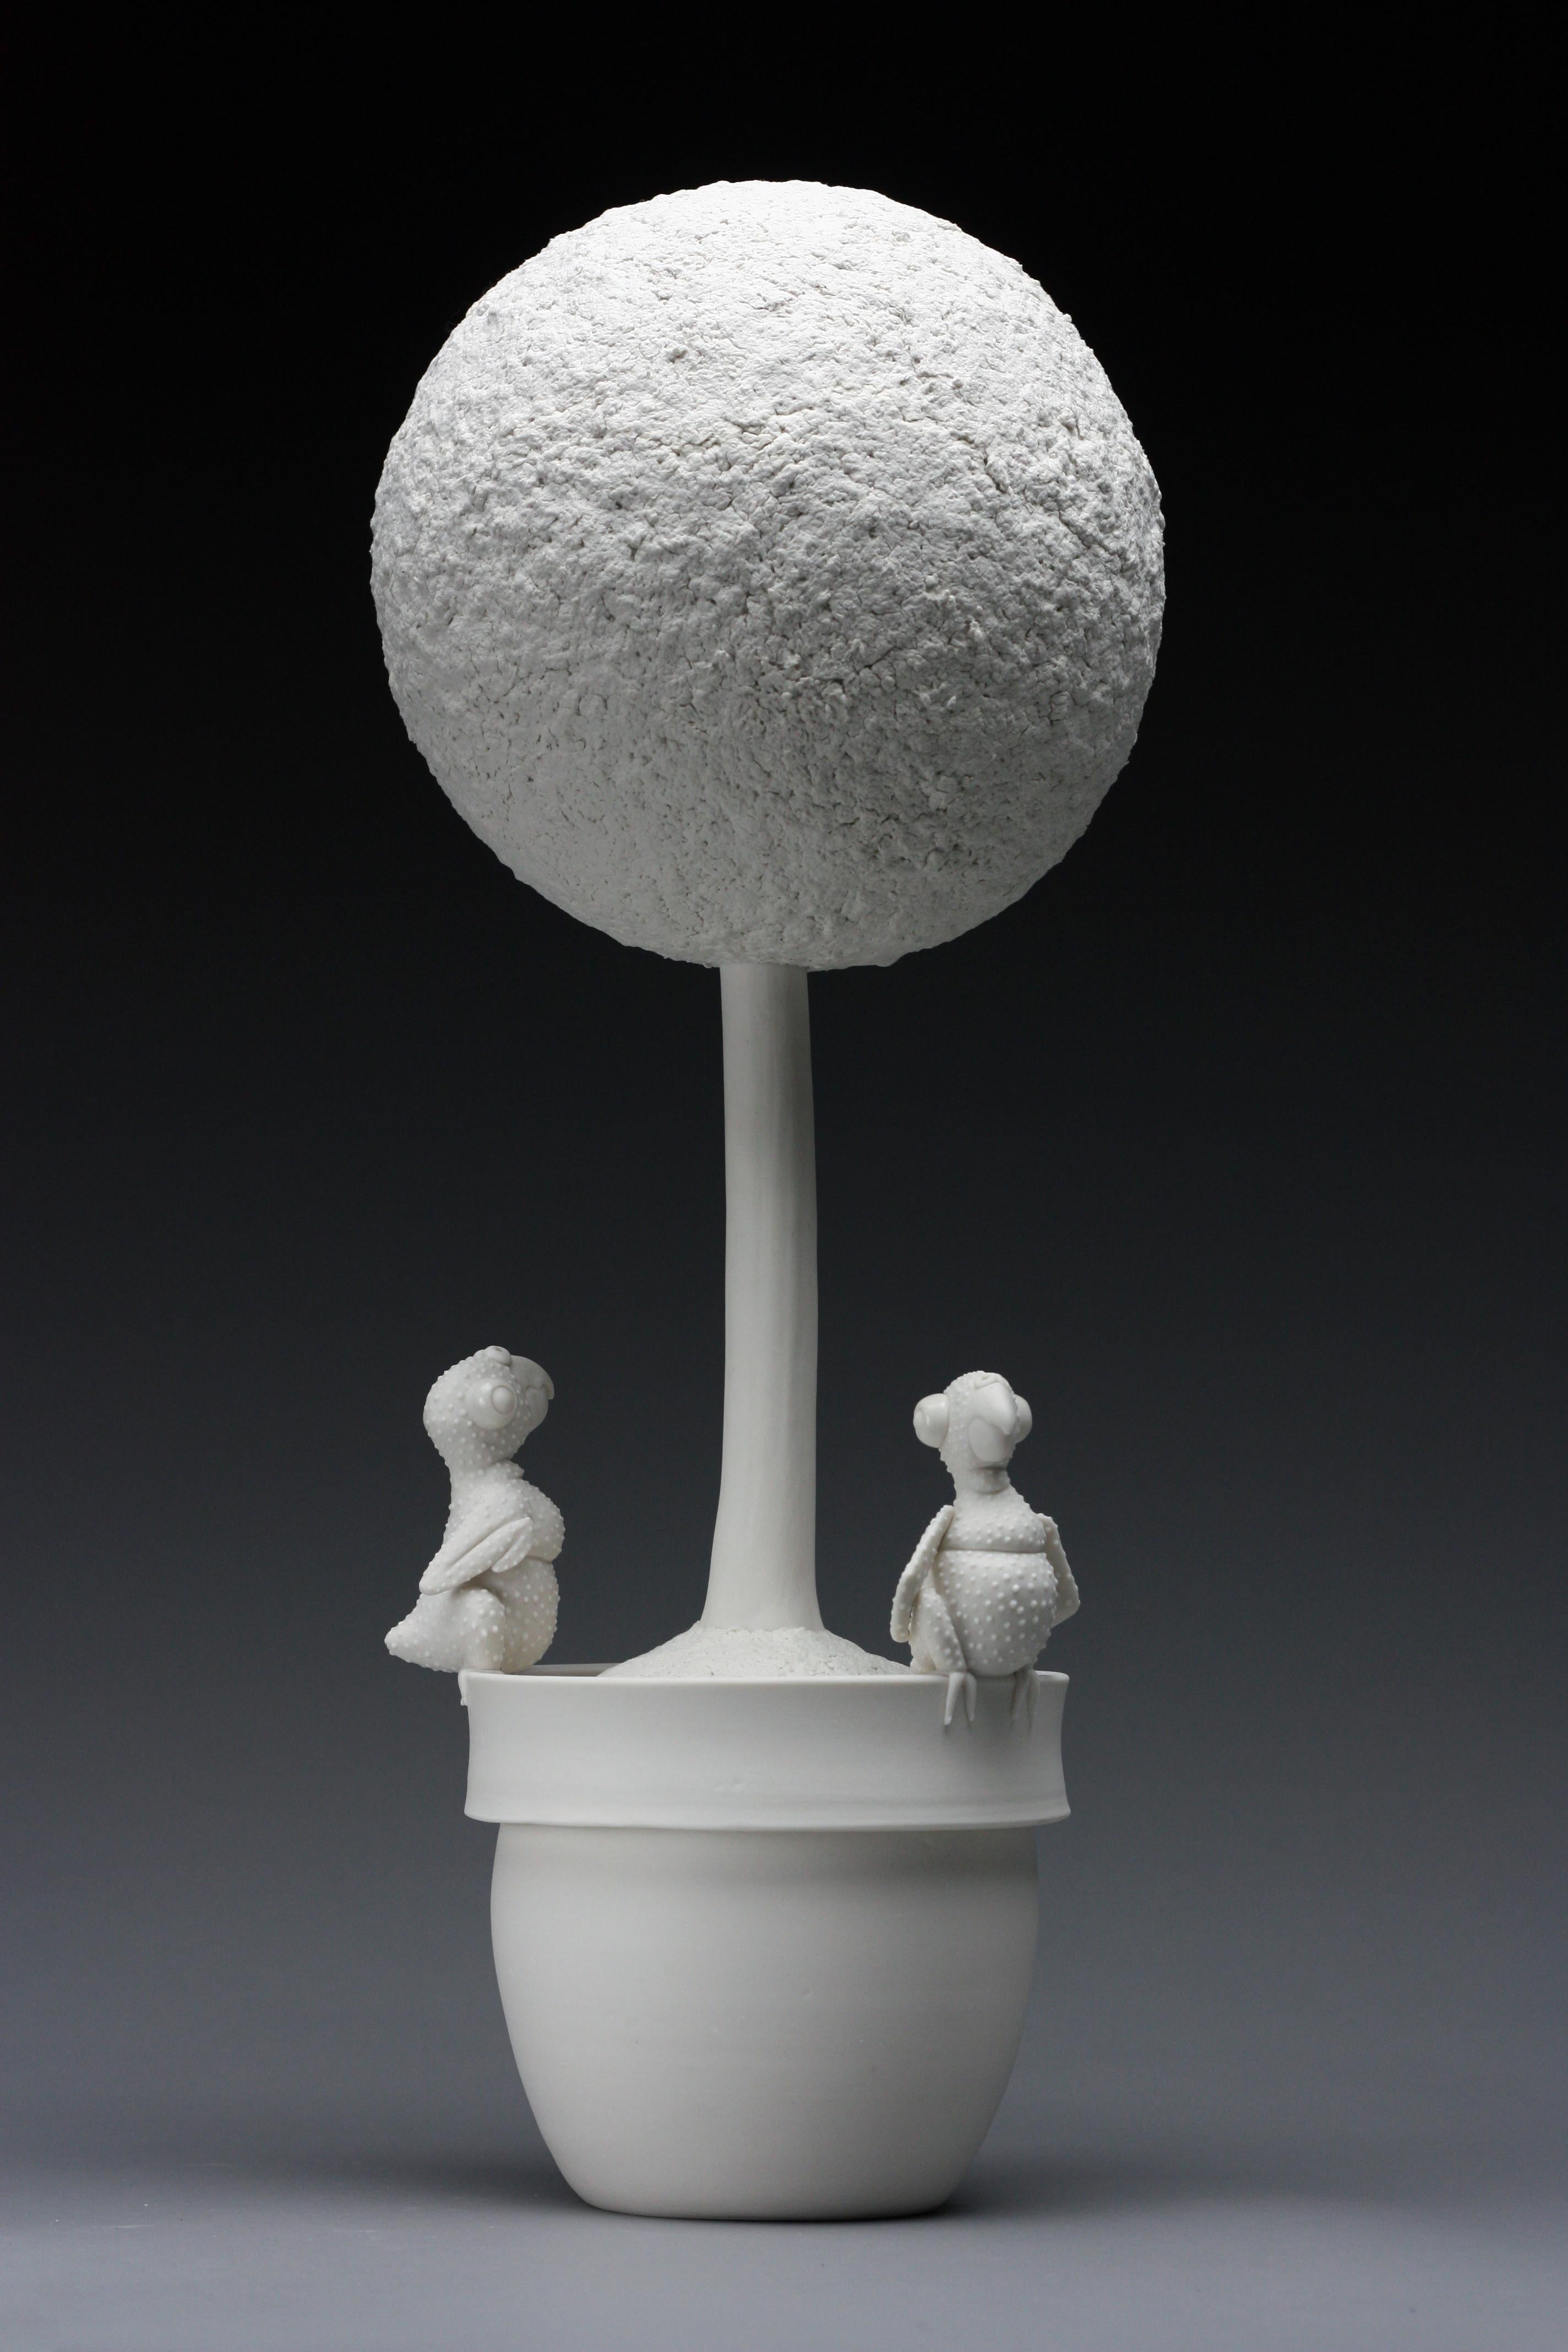 Diese Skulptur zeigt zwei neugeborene Babyvögel, die auf einem Topftopfen sitzen, der von der New Yorker Künstlerin Bethany Krull aus superweißem Porzellan und weißem Pappmaché handgefertigt wurde.  Die komplizierten Details der federlosen Haut des